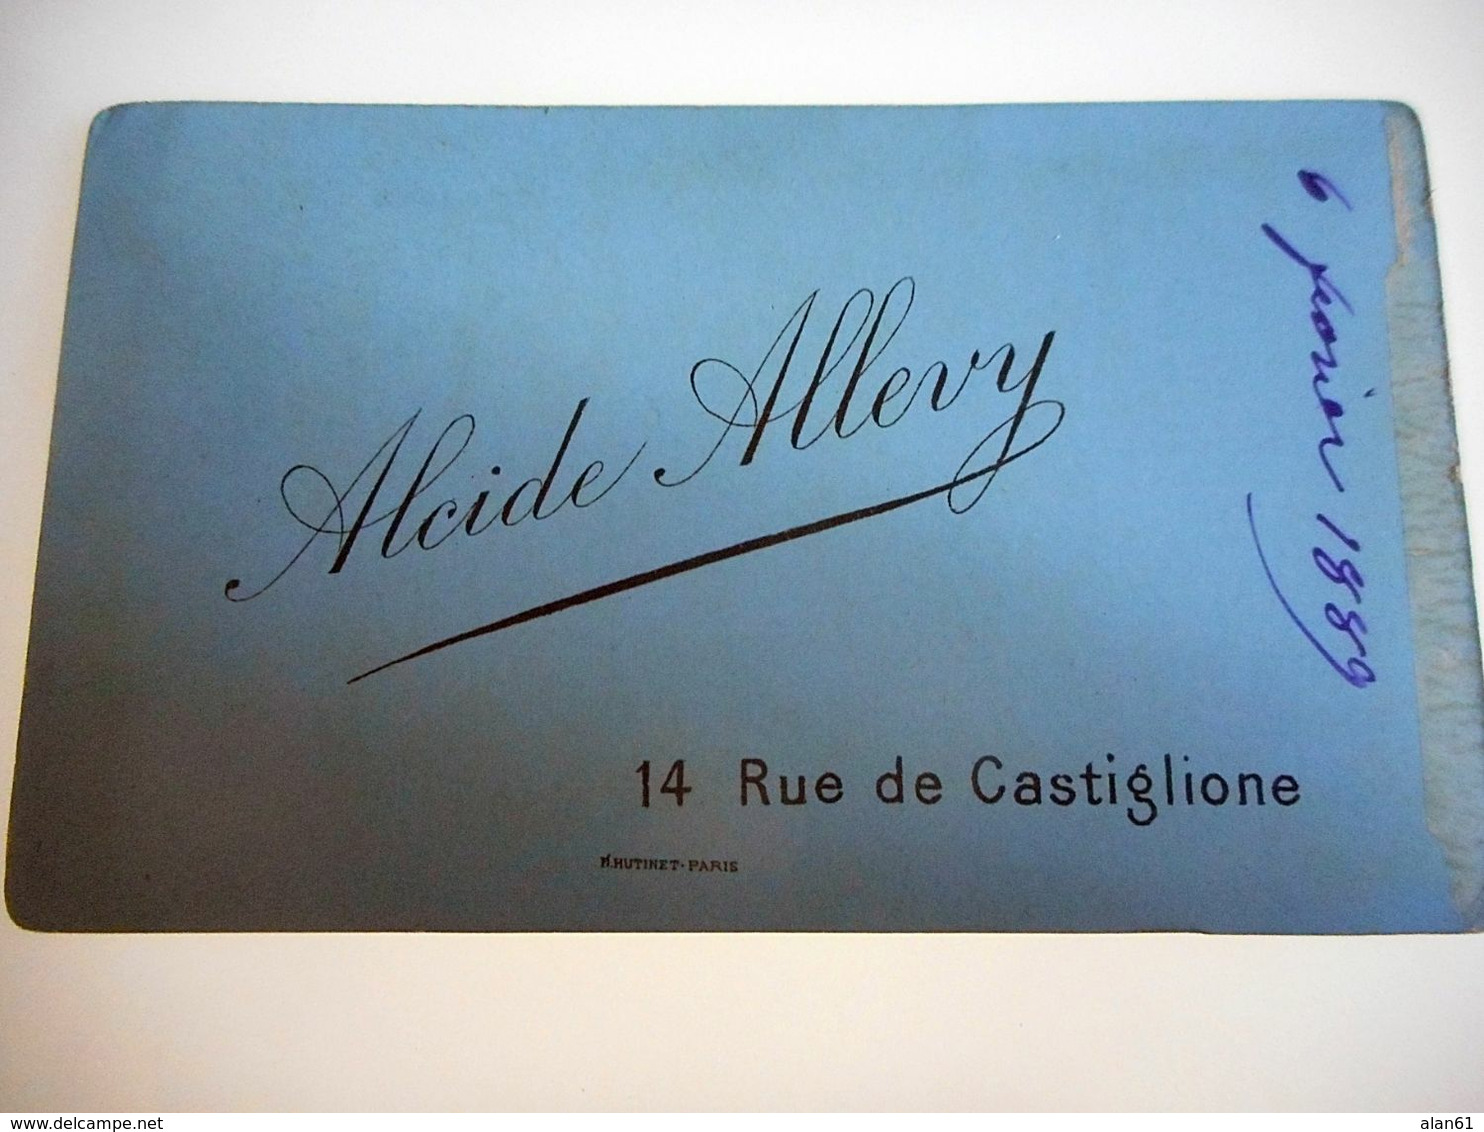 PHOTO CDV 19 EME 1889 HOMME ELEGANT BARBE MOUSTACHE MODE  Cabinet ALLERY A PARIS - Alte (vor 1900)